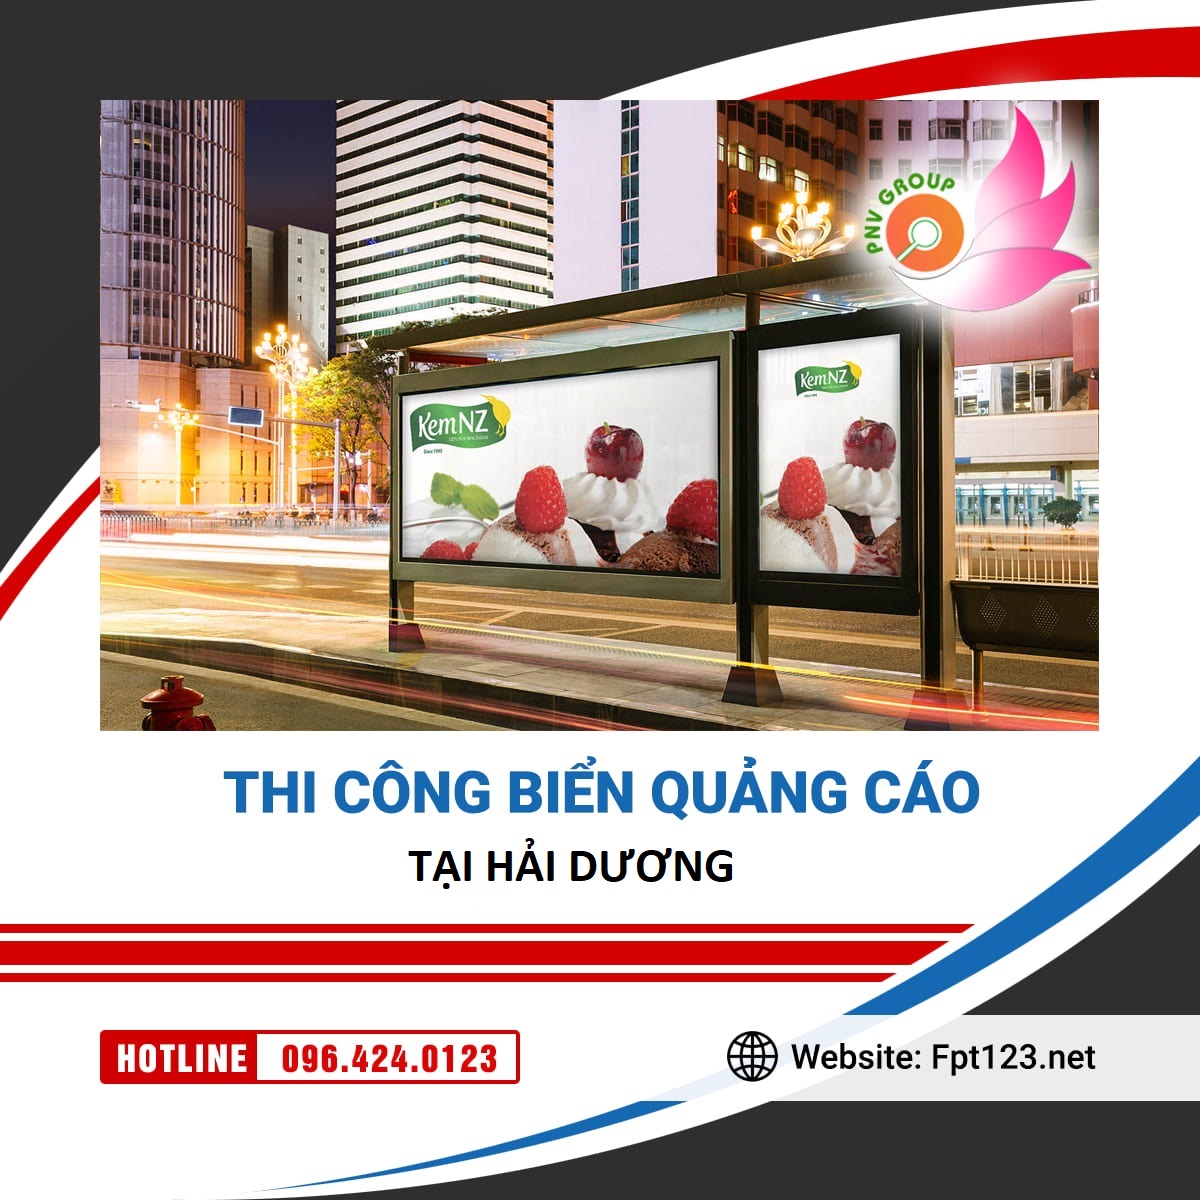 Thi công biển quảng cáo phường Ngọc Châu, TP Hải Dương